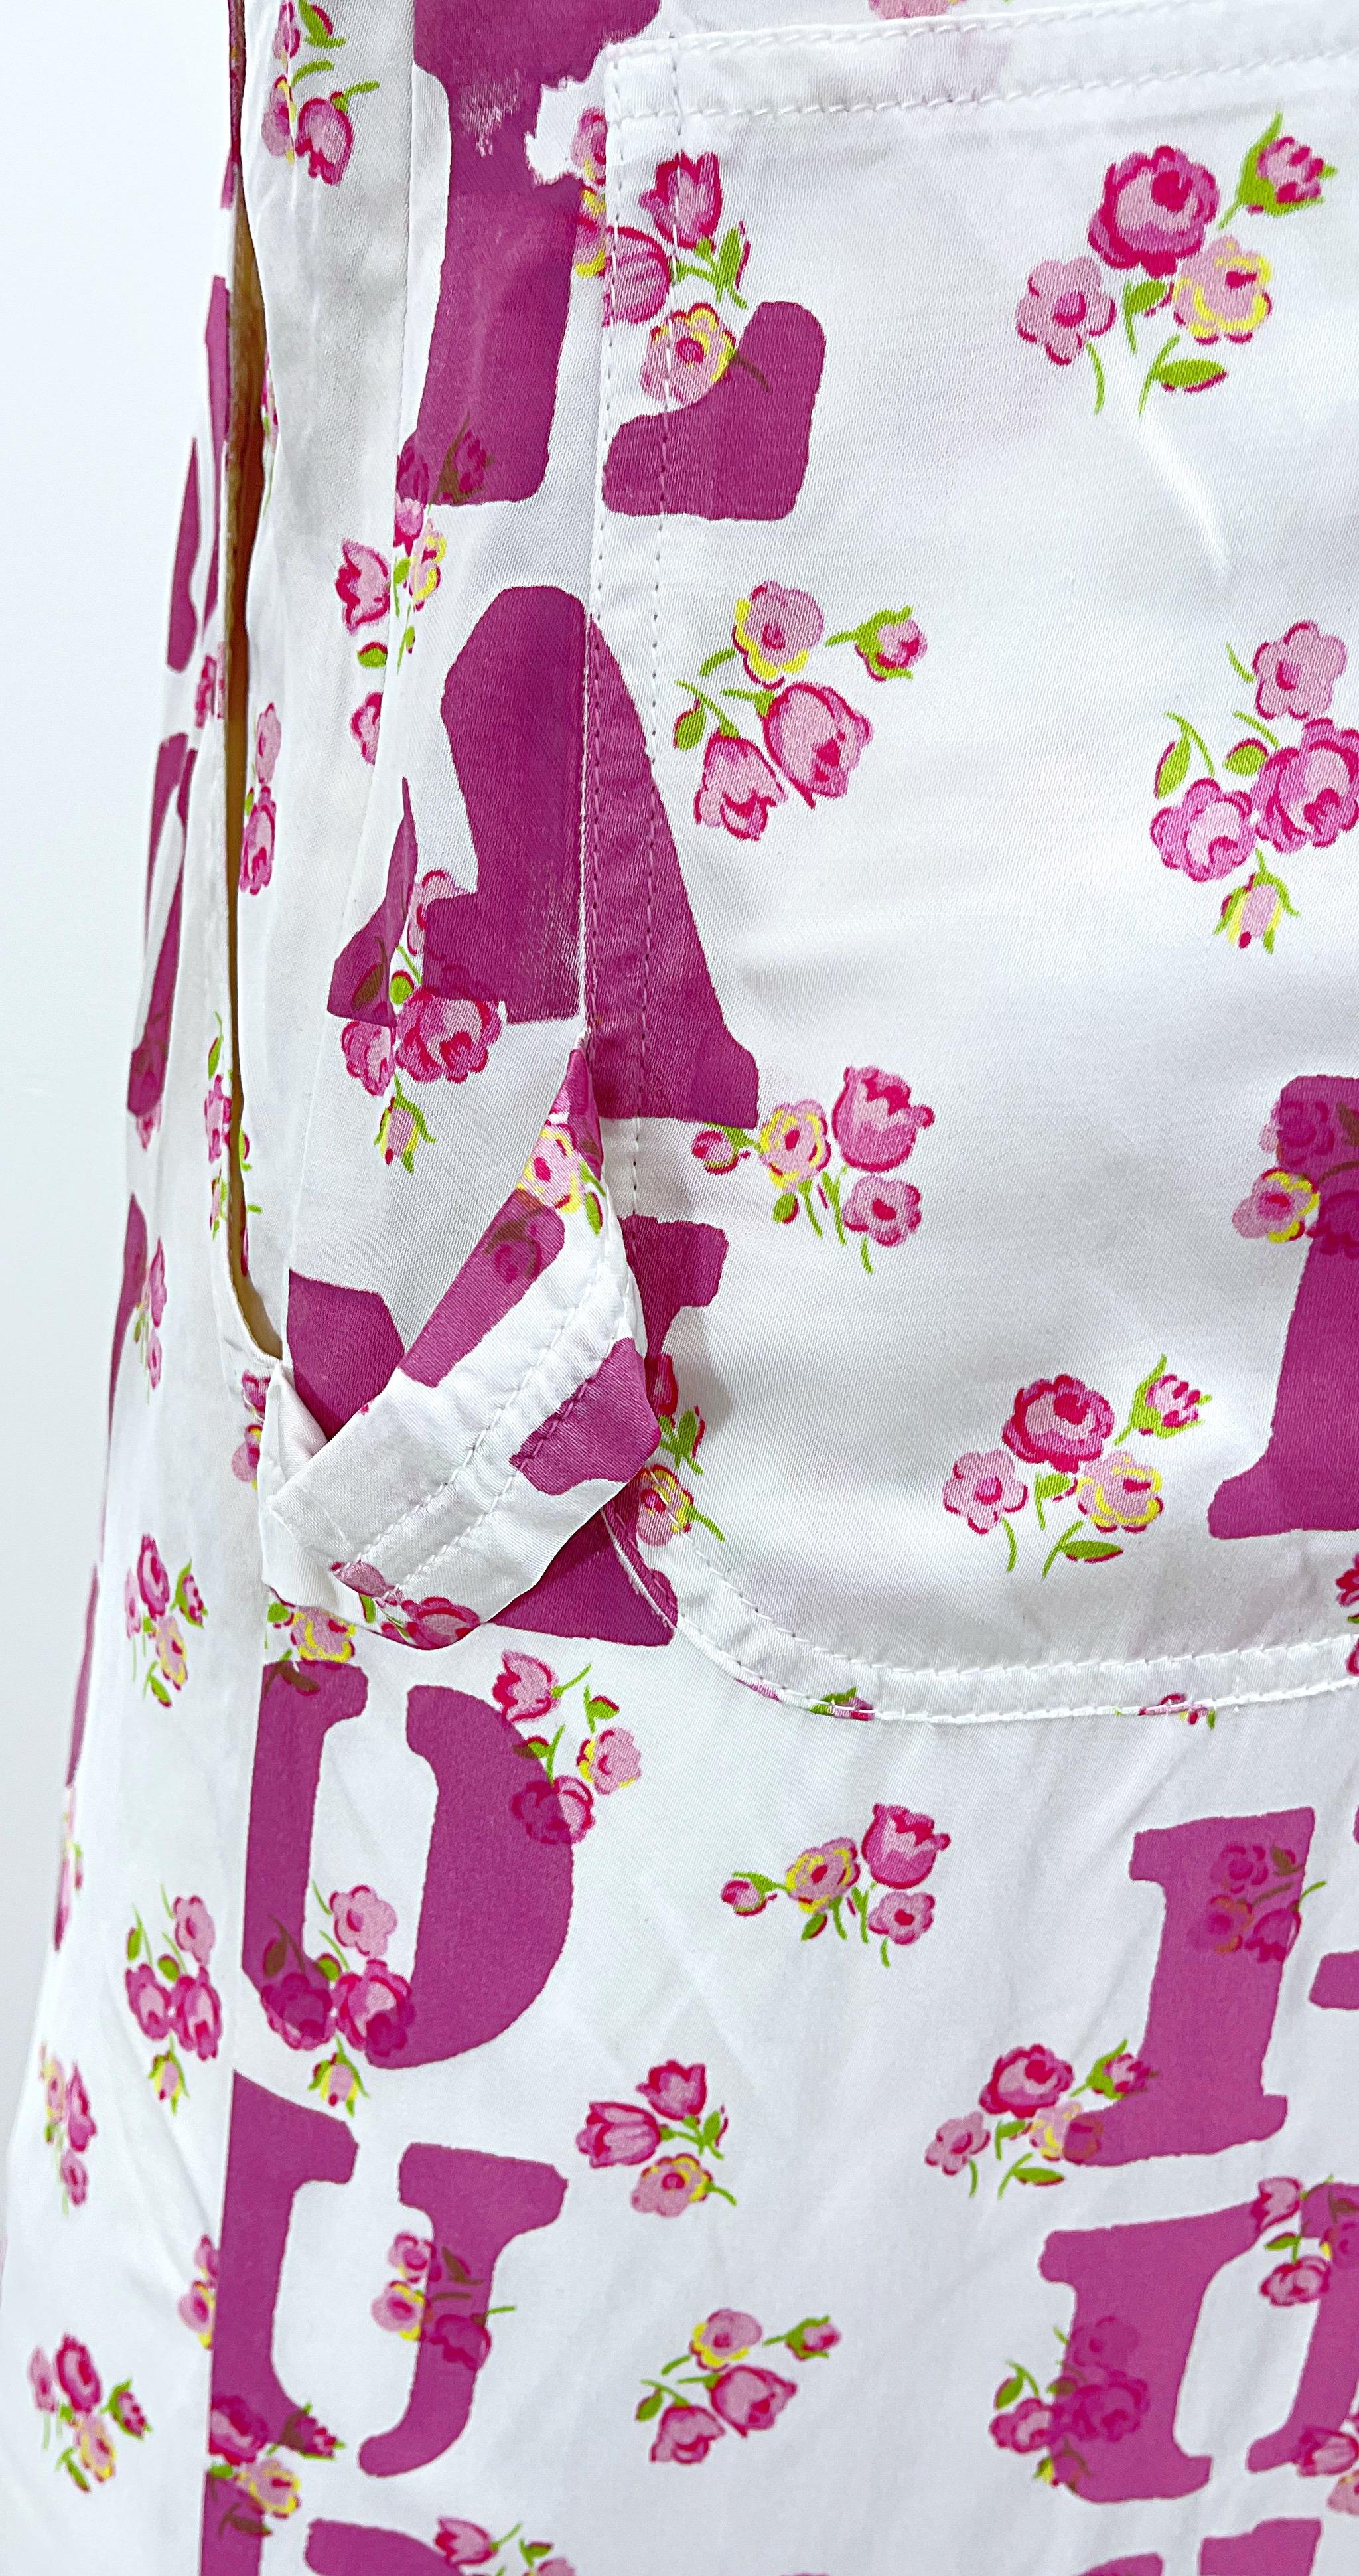 Moschino Couture Resort 2020 Größe 8 Glamour Puss Overalls mit Blumendruck in Übergröße 5